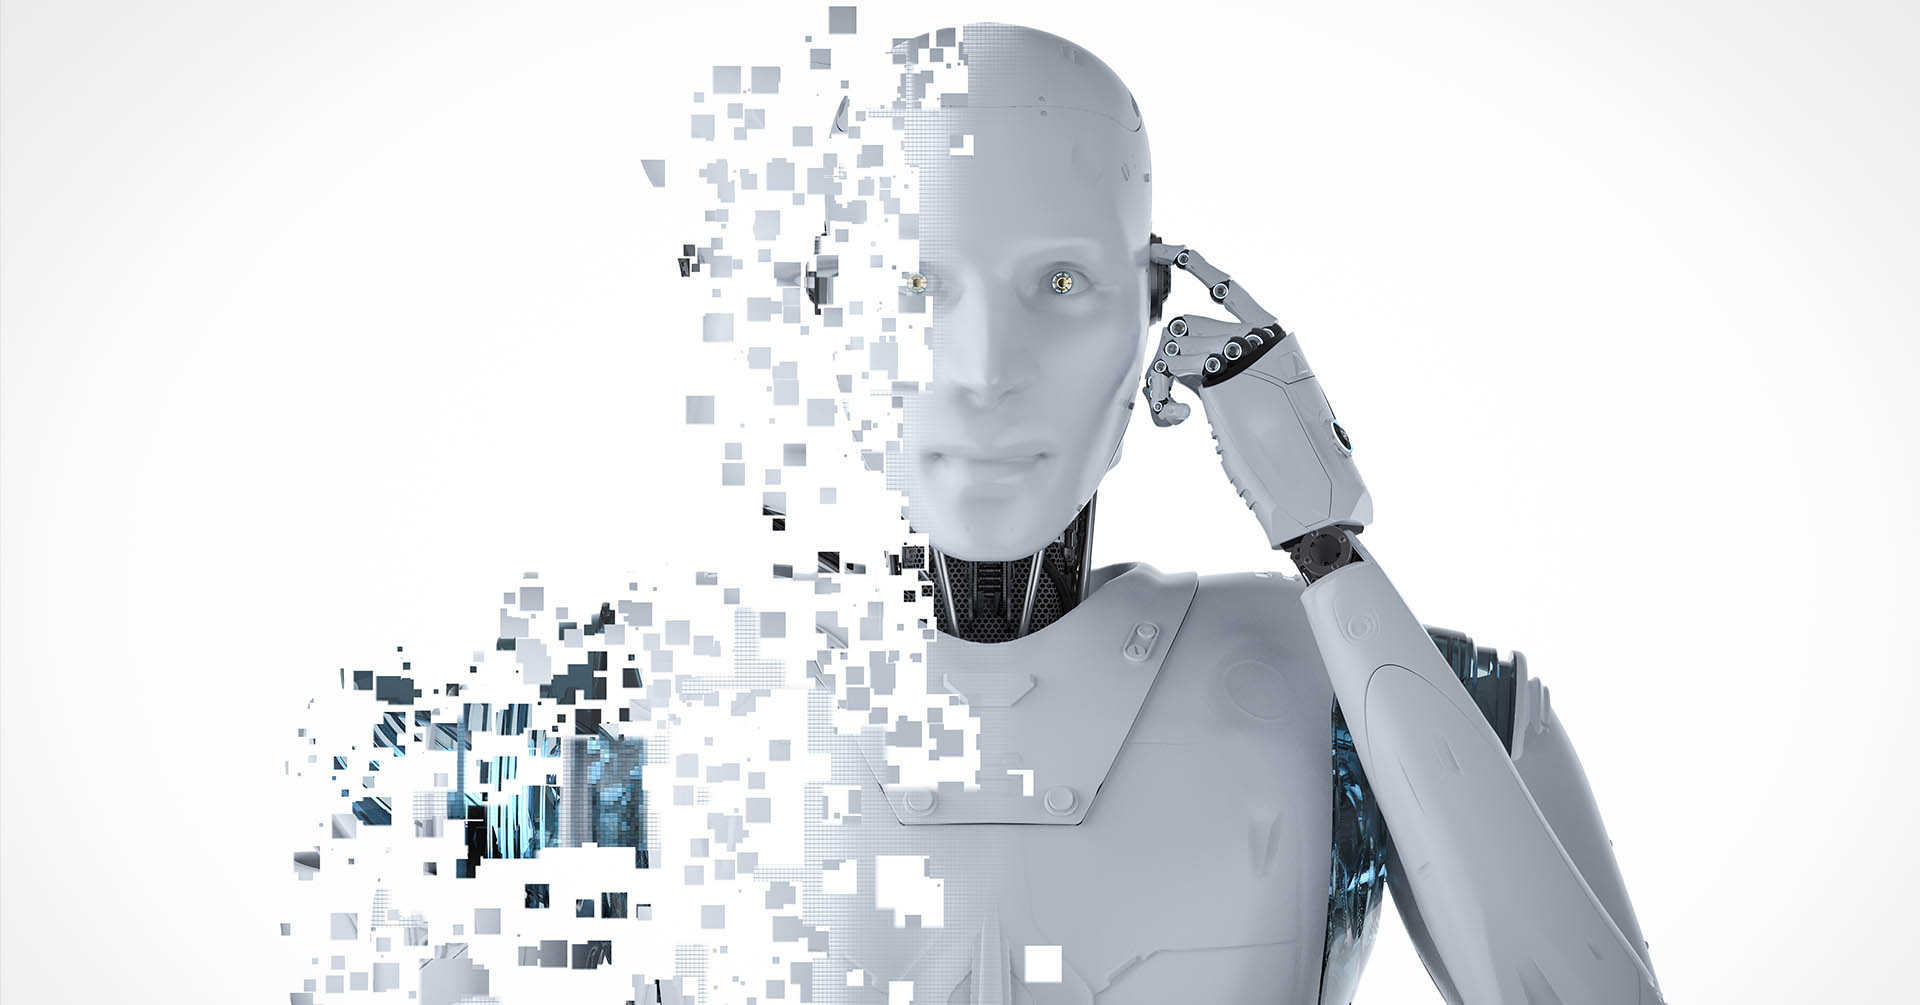 Intelligenza artificiale, supporto o sostituto dell'uomo nel lavoro?